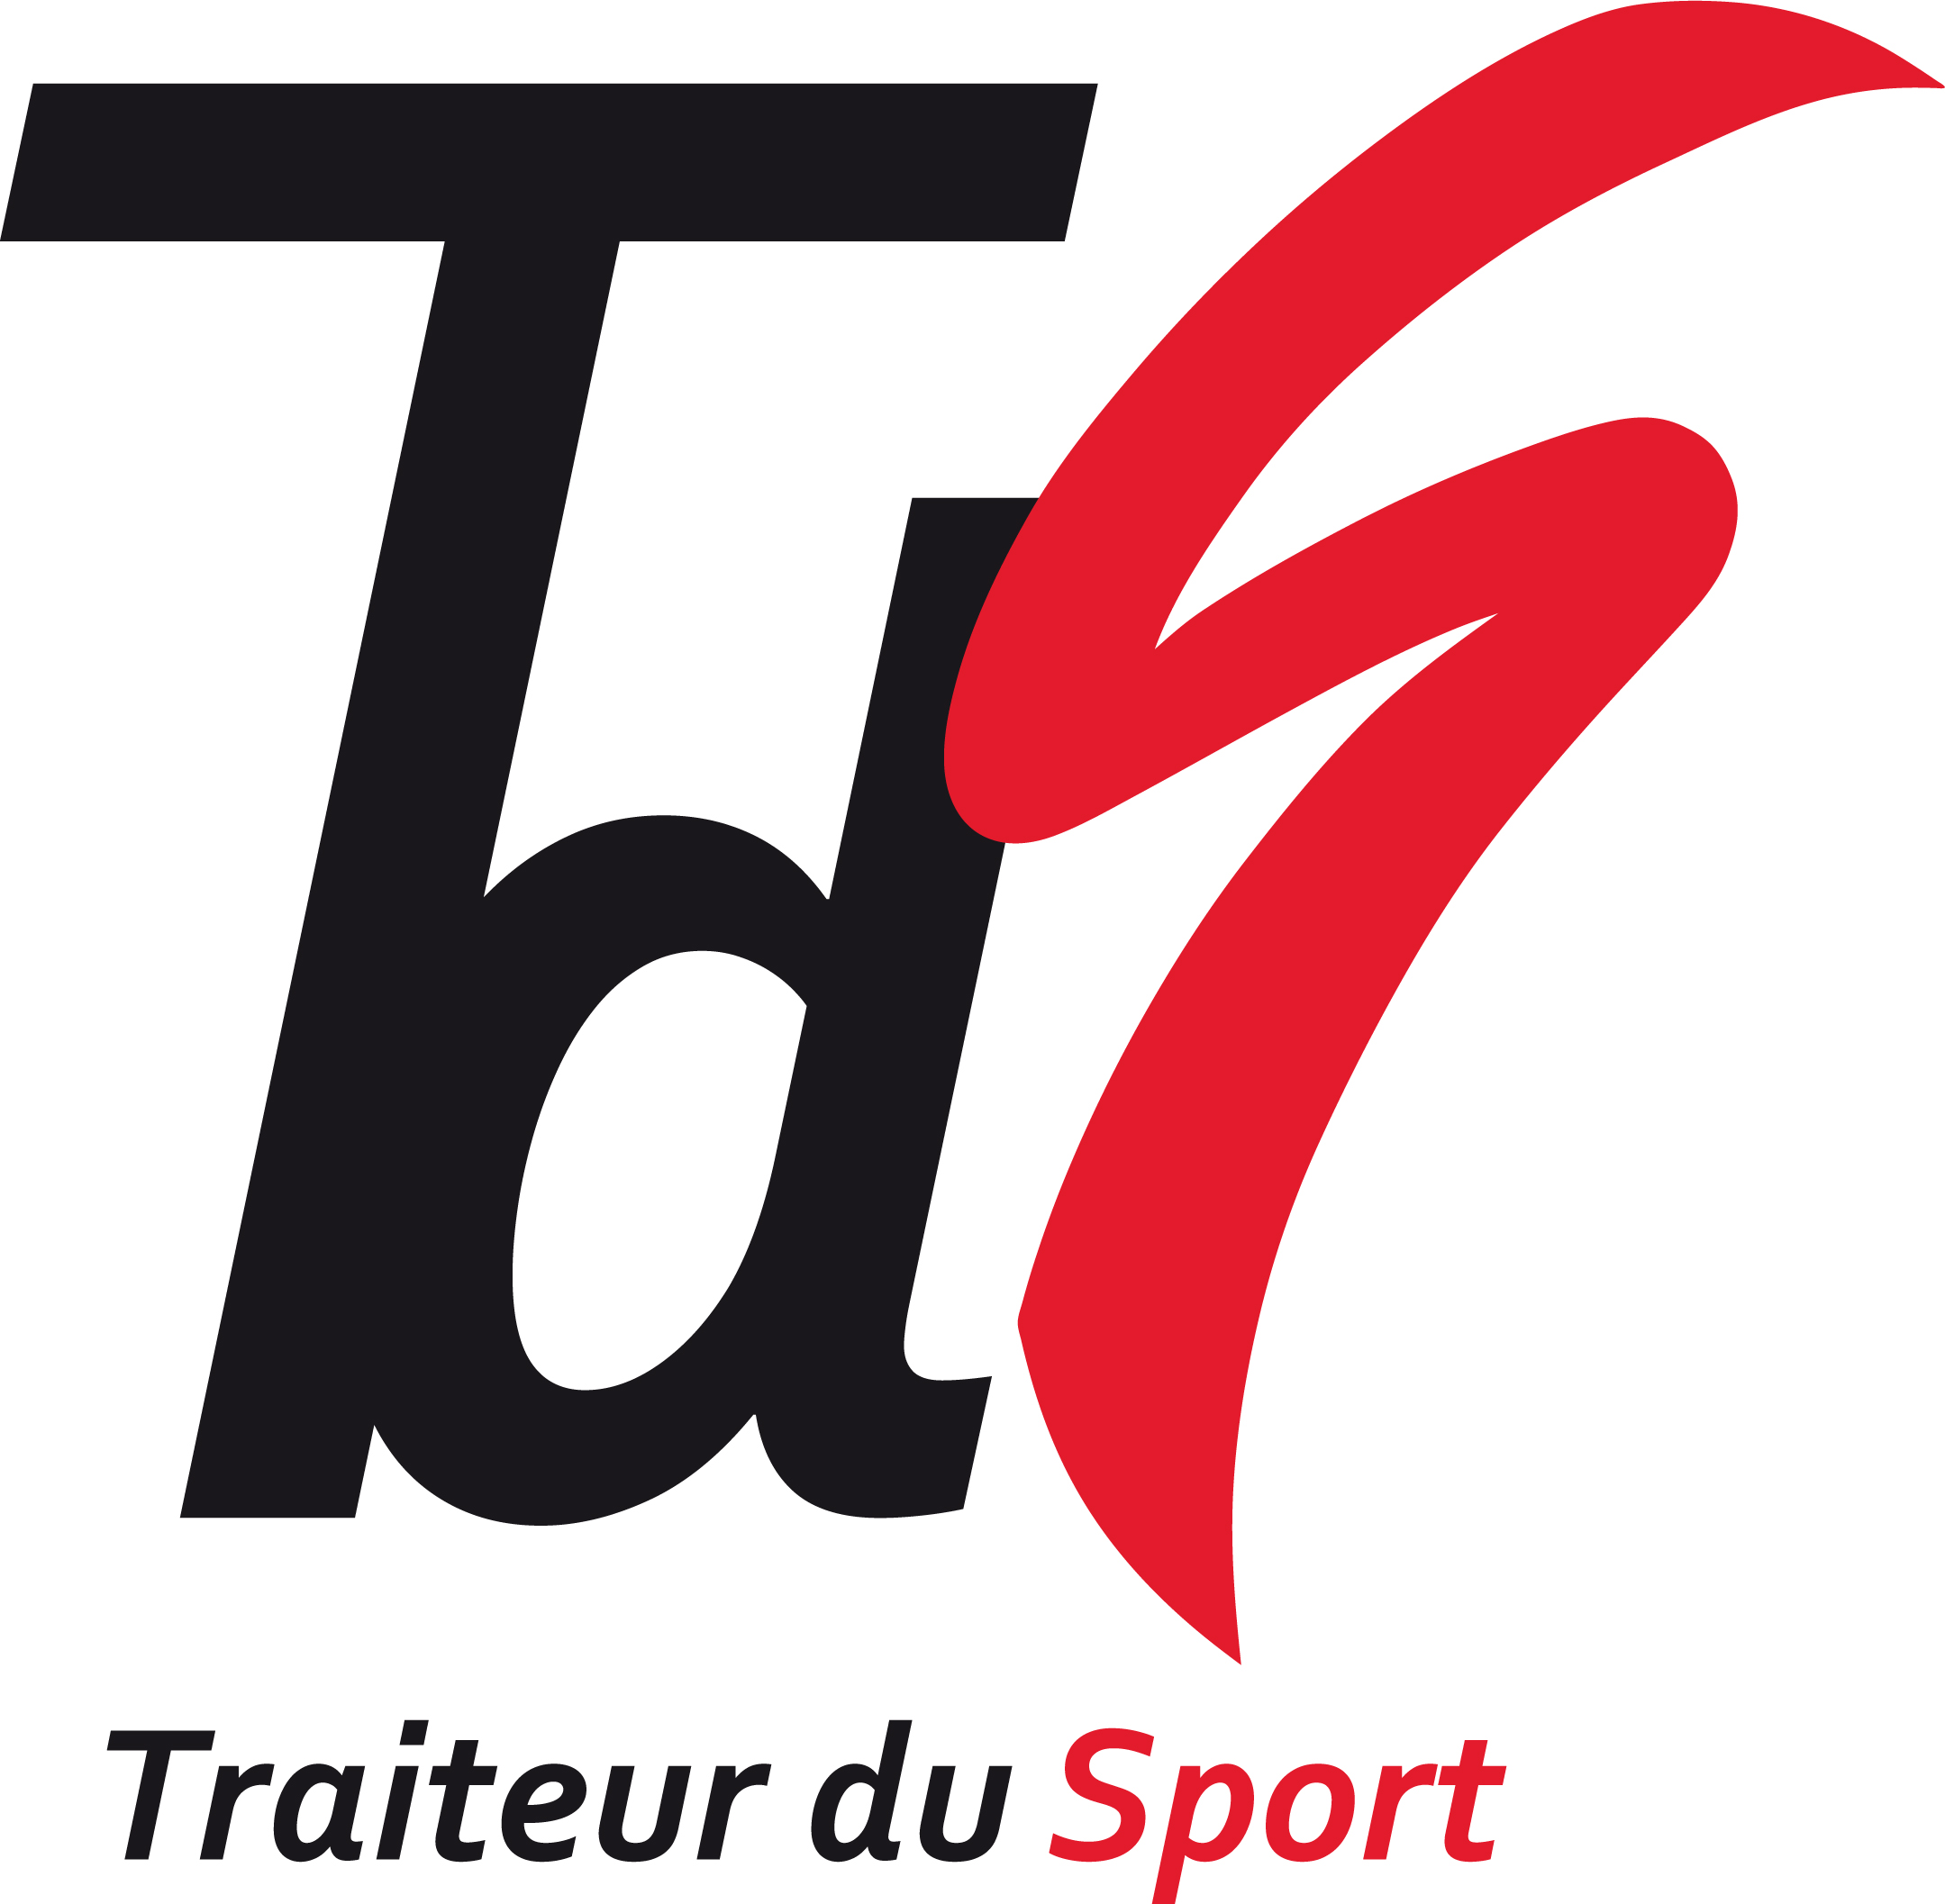 Traiteur du Sport logo vectorise